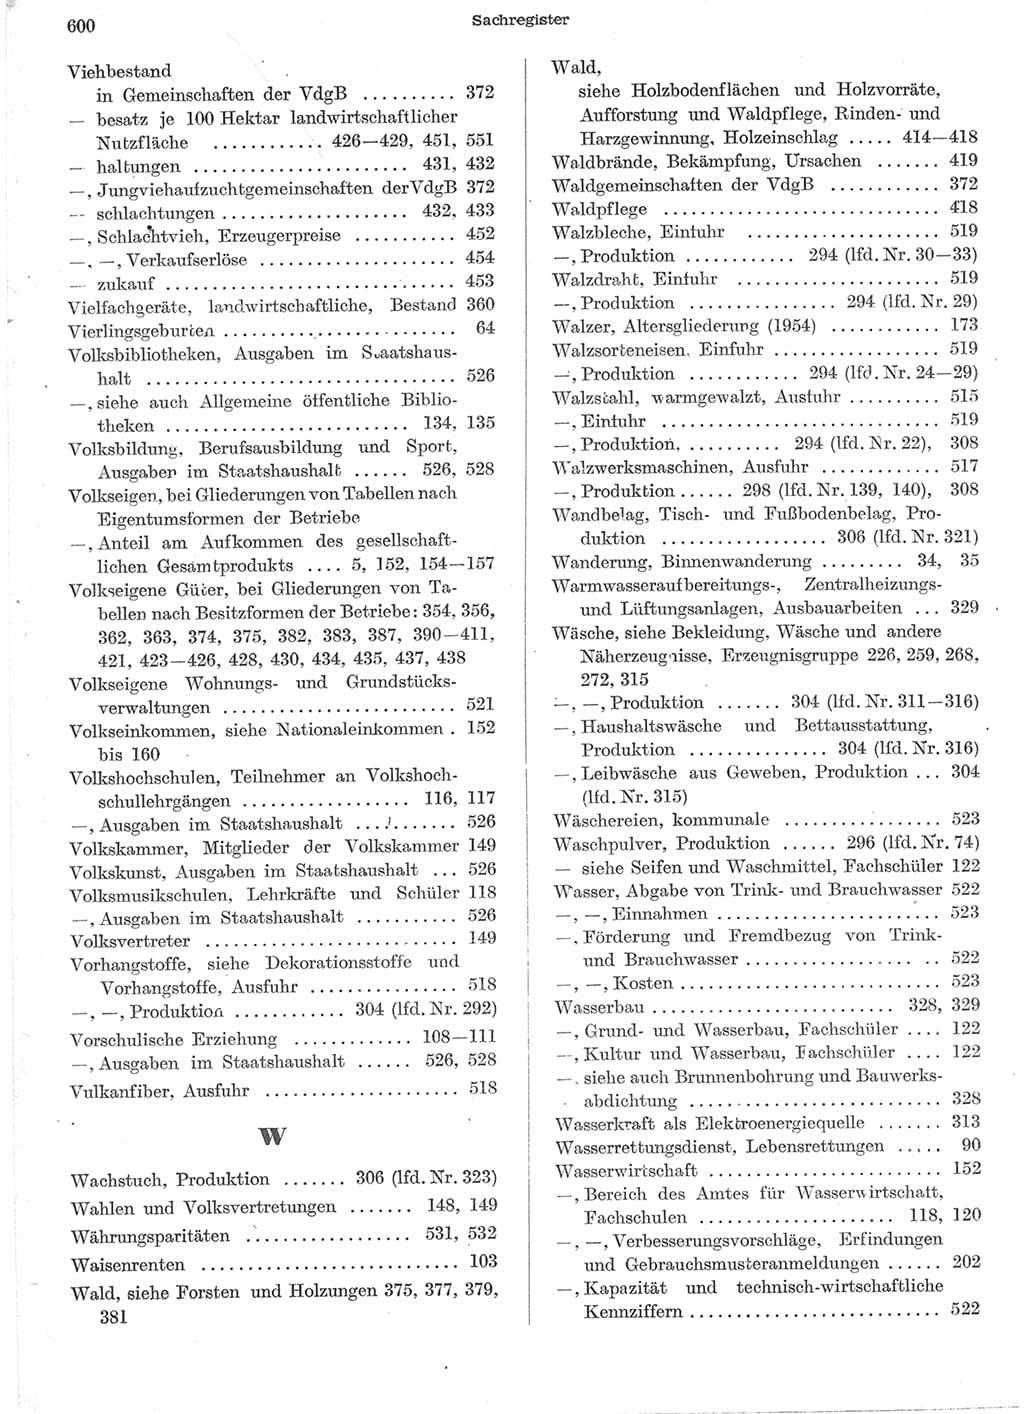 Statistisches Jahrbuch der Deutschen Demokratischen Republik (DDR) 1957, Seite 600 (Stat. Jb. DDR 1957, S. 600)